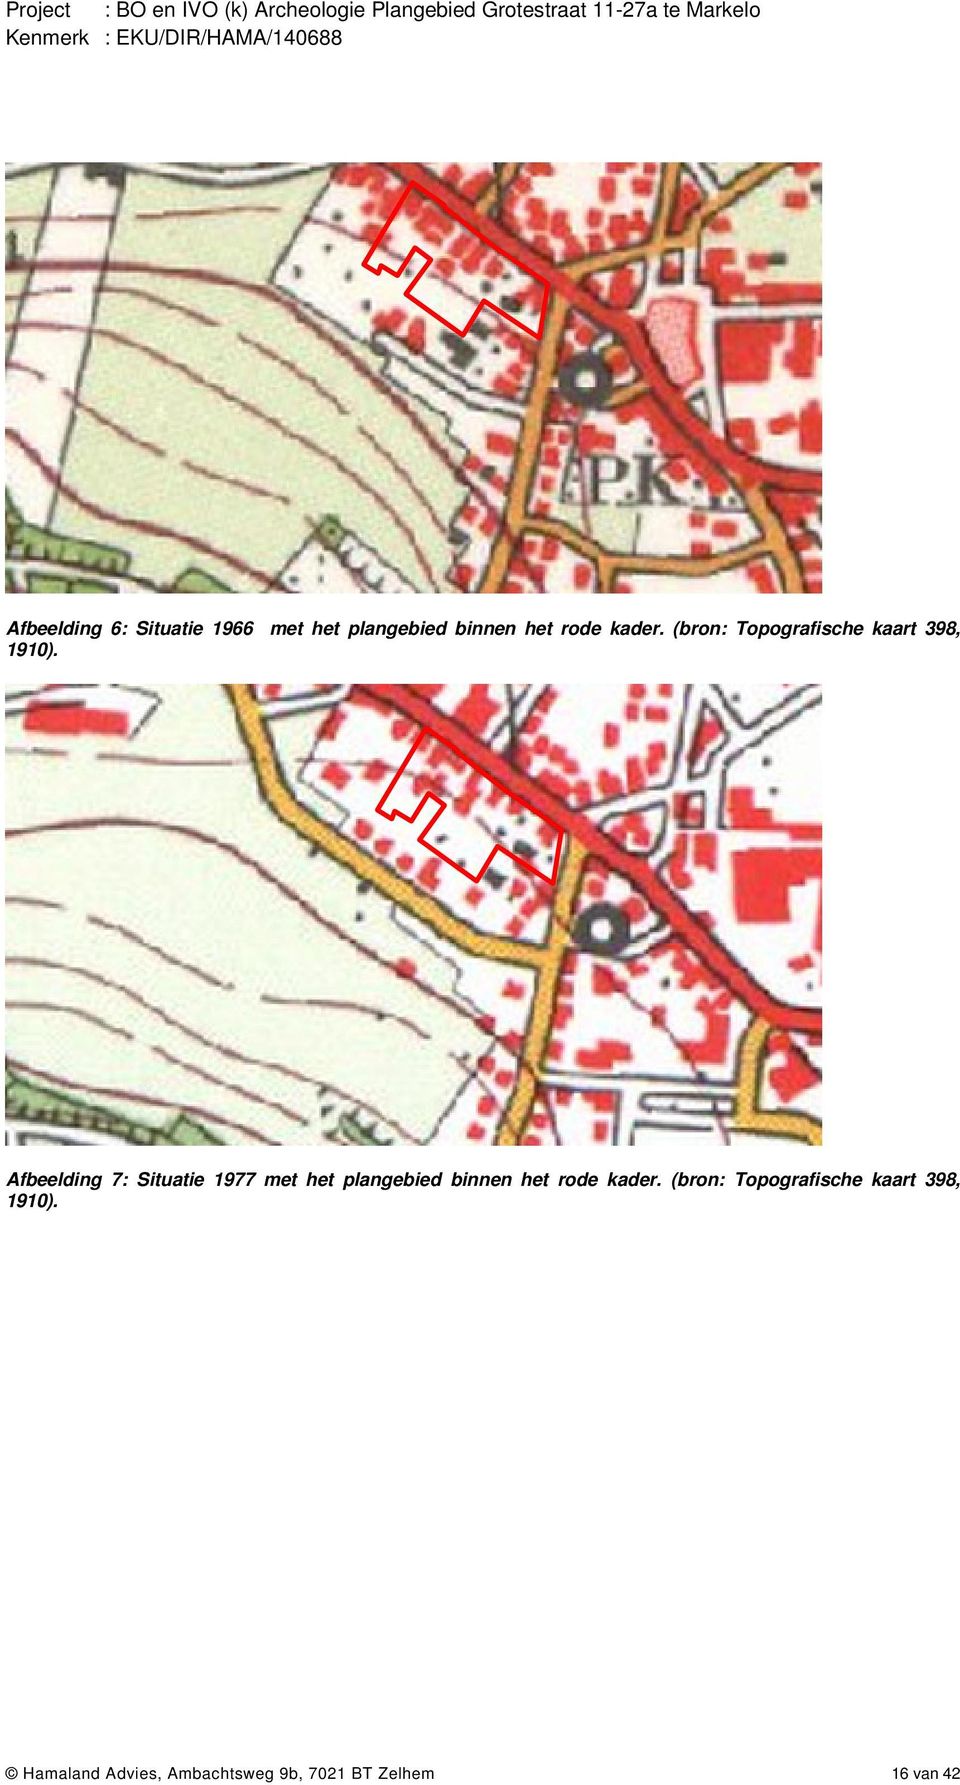 Afbeelding 7: Situatie 1977 met het plangebied binnen het rode kader.